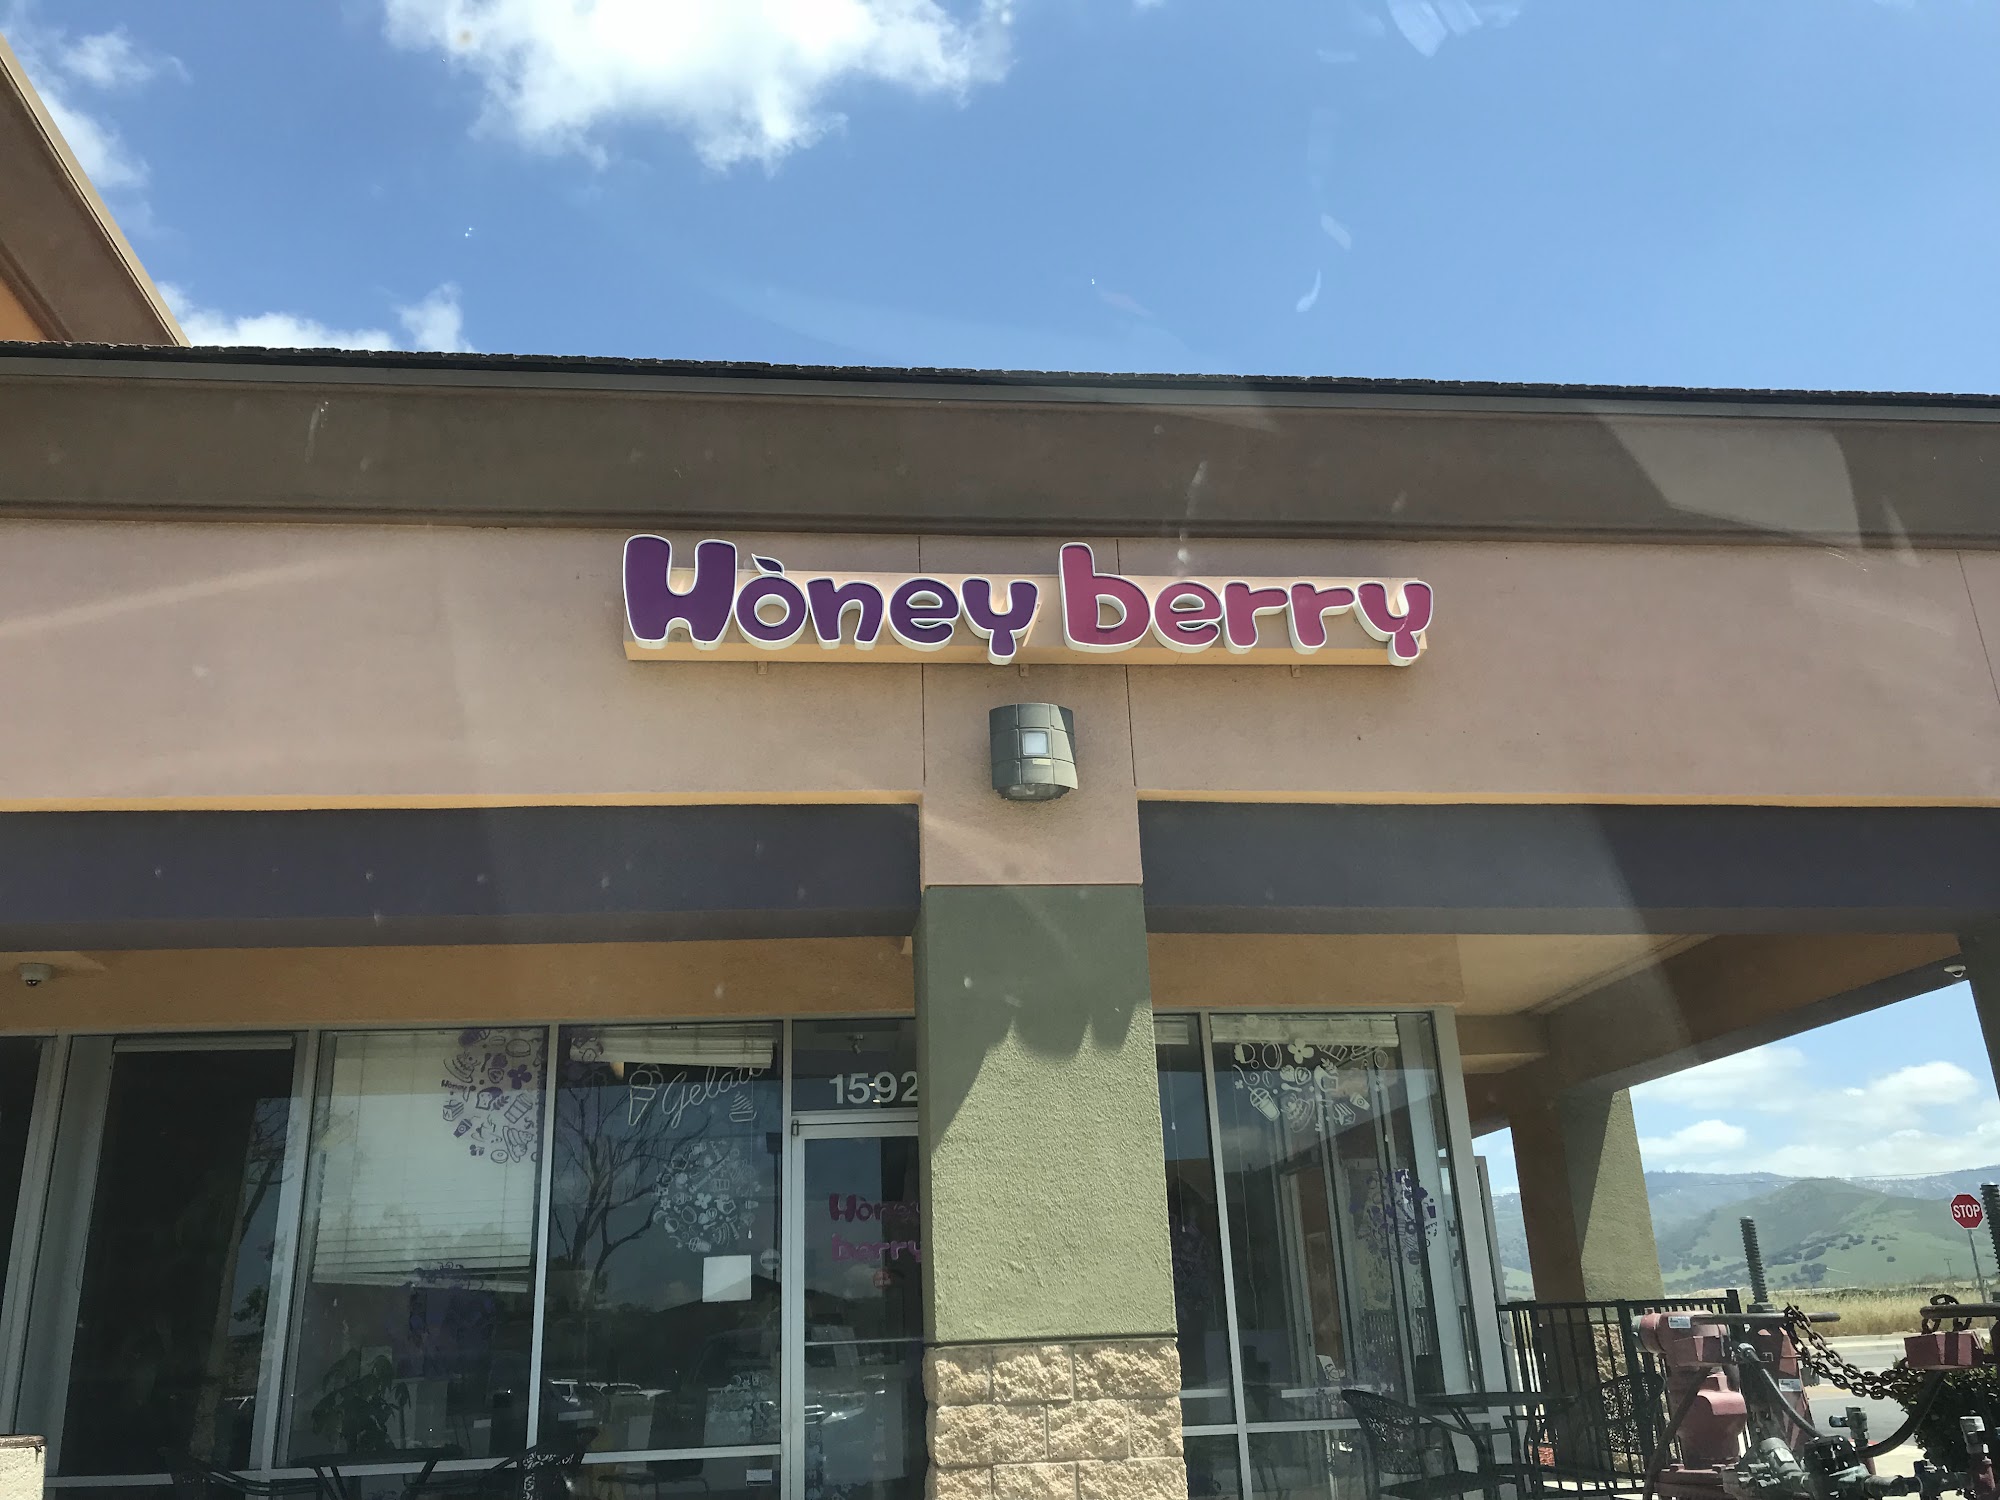 Honey berry